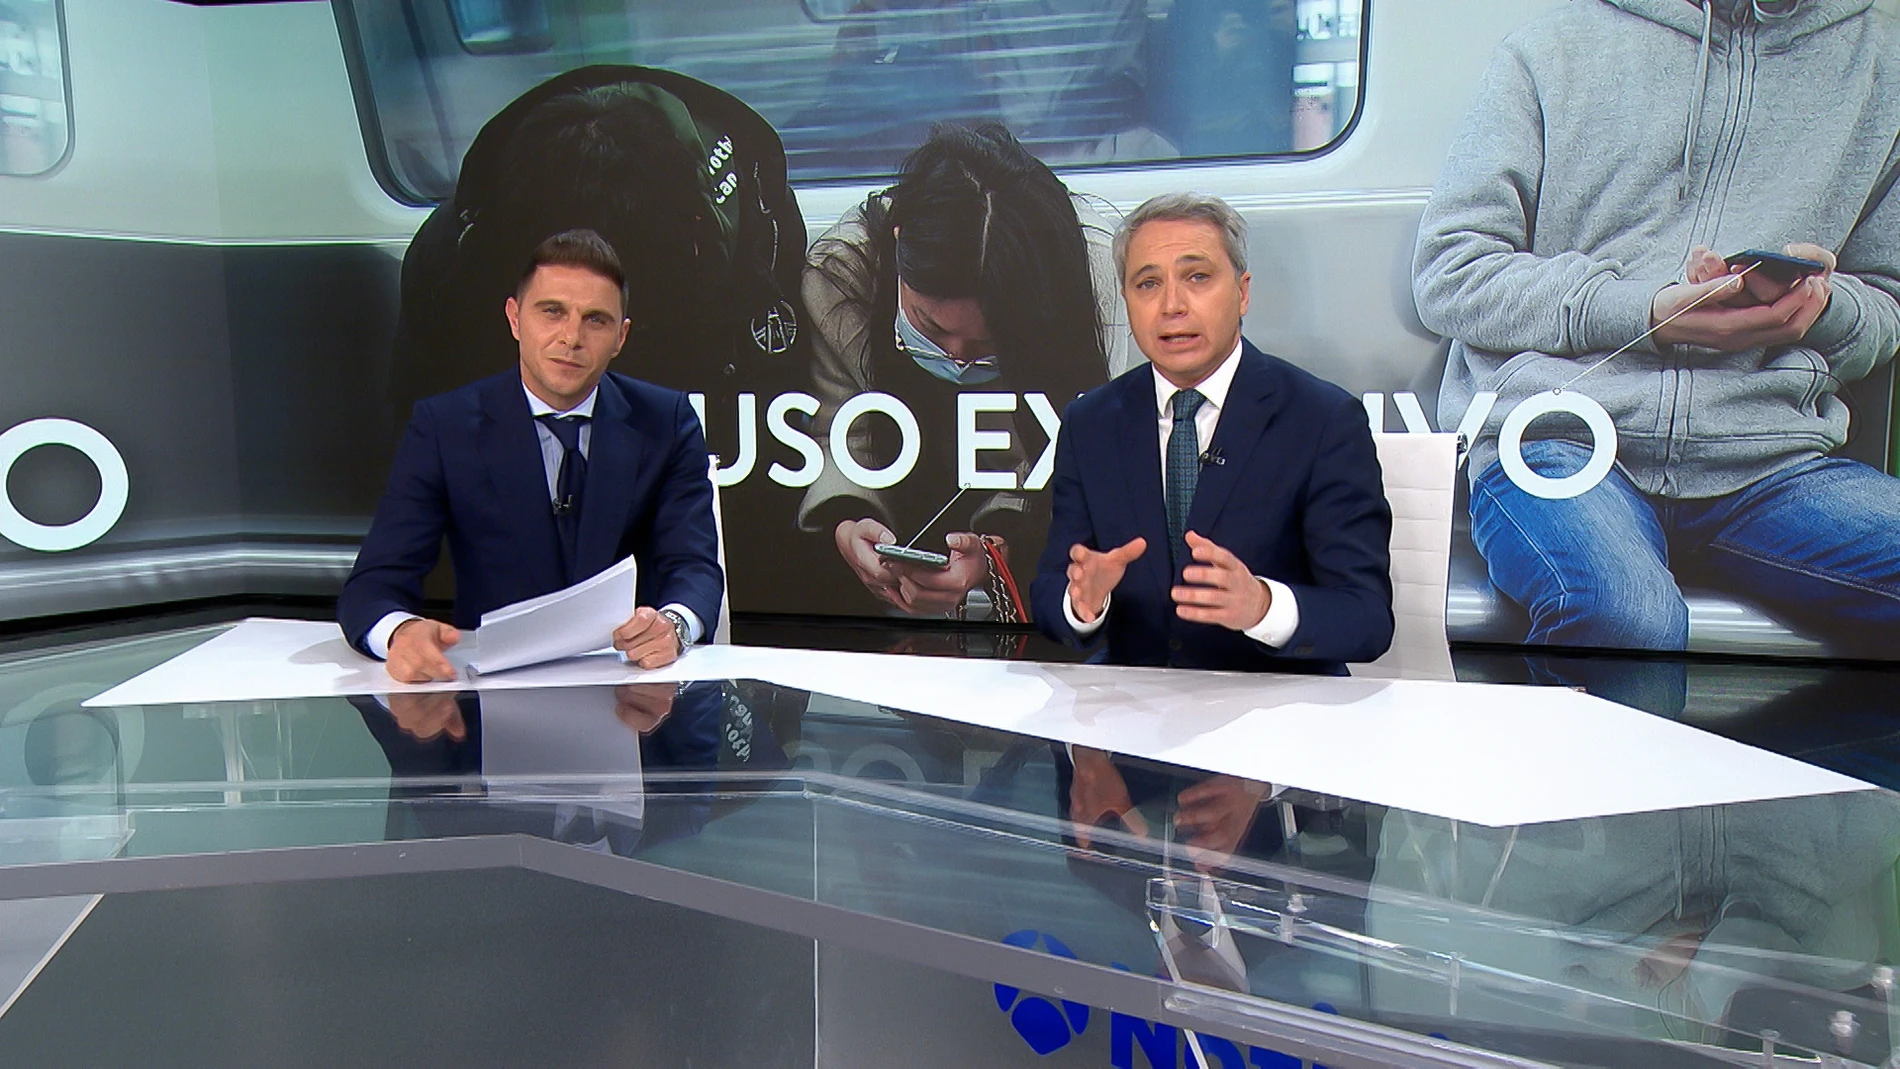 Joaquín debuta como presentador de informativos junto a Vicente Vallés: “Estoy sudando”